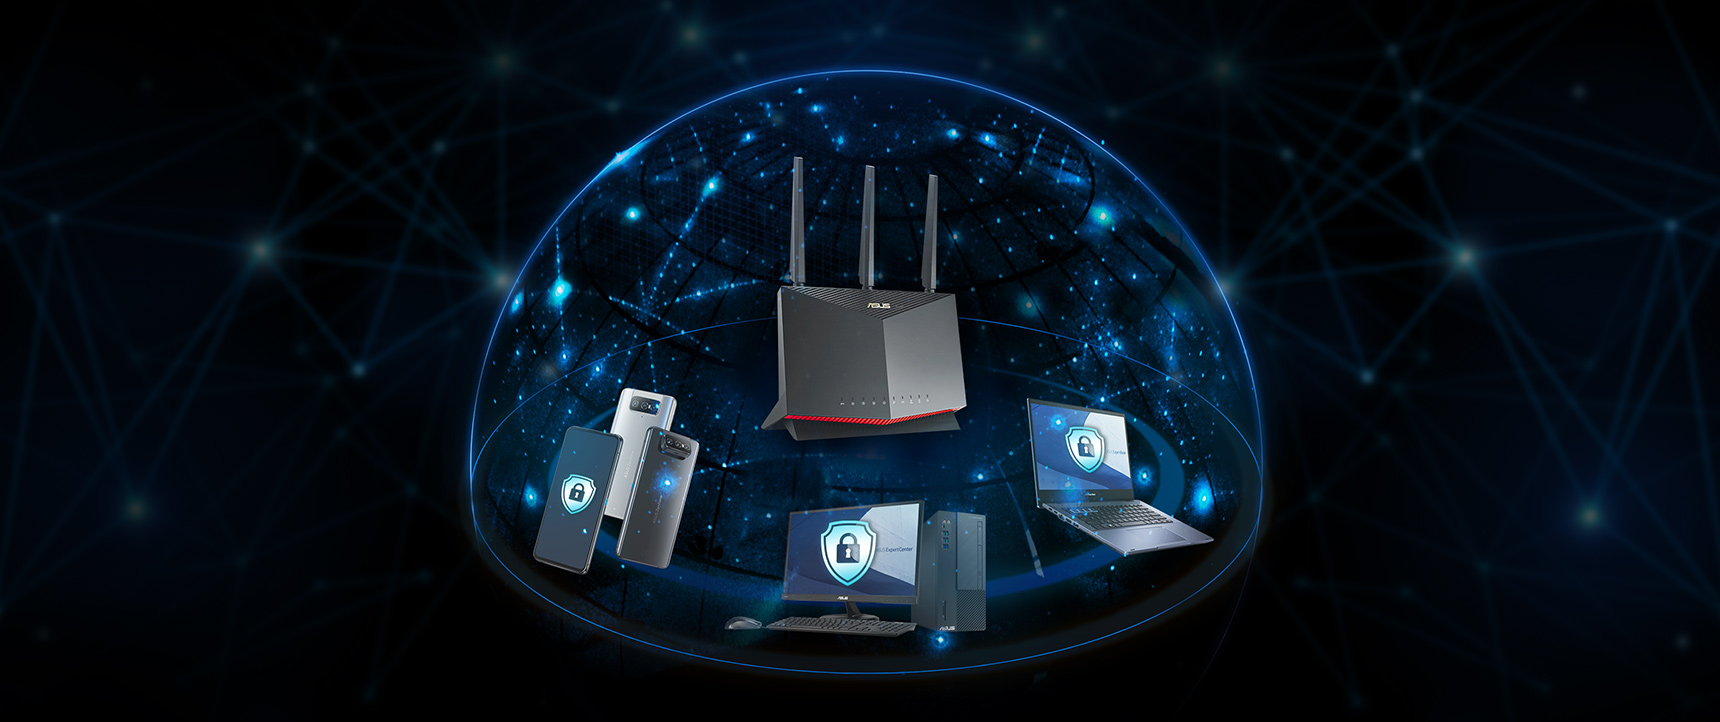 Většina routerů ASUS obsahuje technologii AiProtection od společnosti Trend Micro™, která zajišťuje ochranu každého zařízení ve vaší podnikové síti.